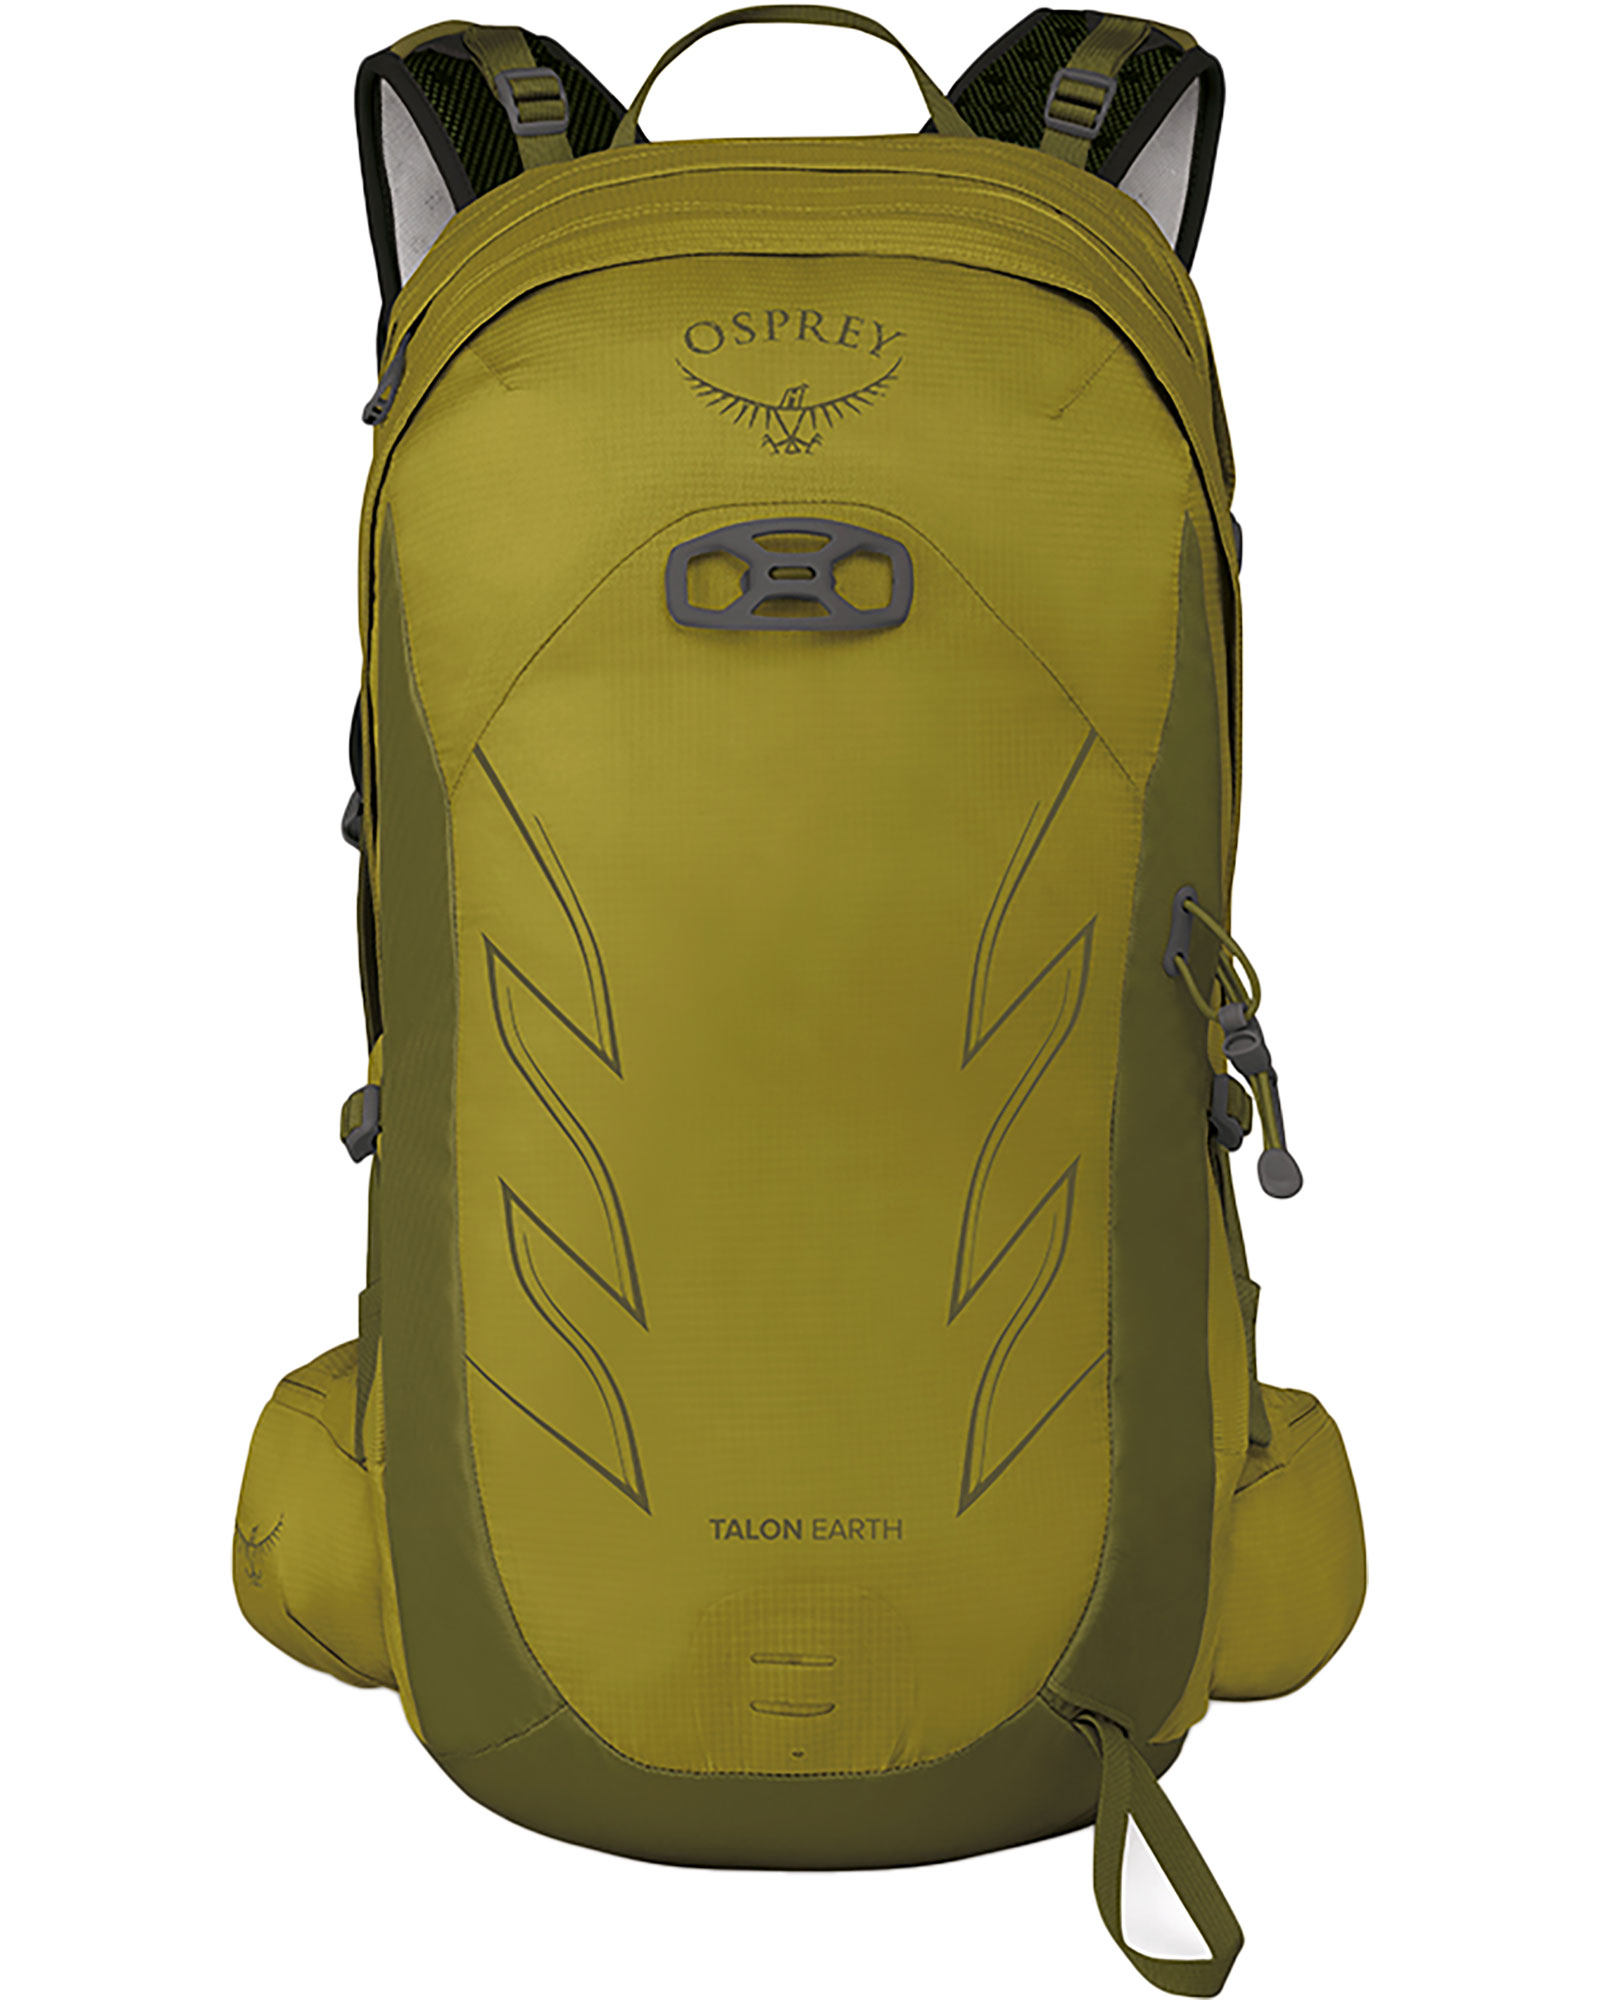 Osprey Talon Earth 22 Backpack